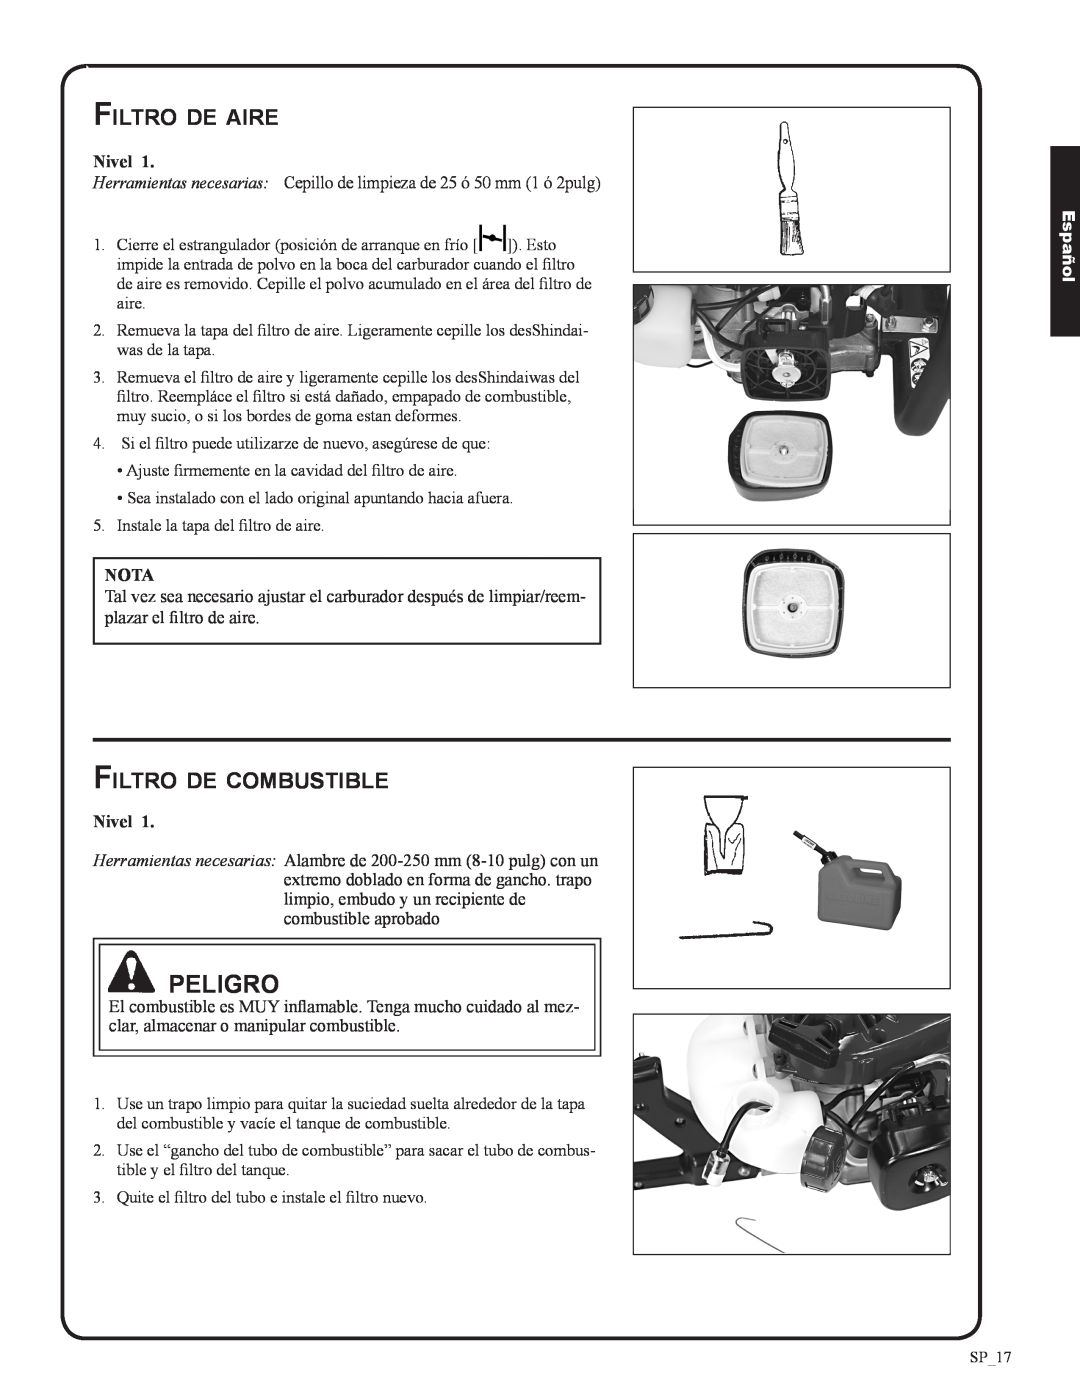 Shindaiwa 82053, DH212 manual Peligro, Filtro de aire, Filtro de combustible, Español 